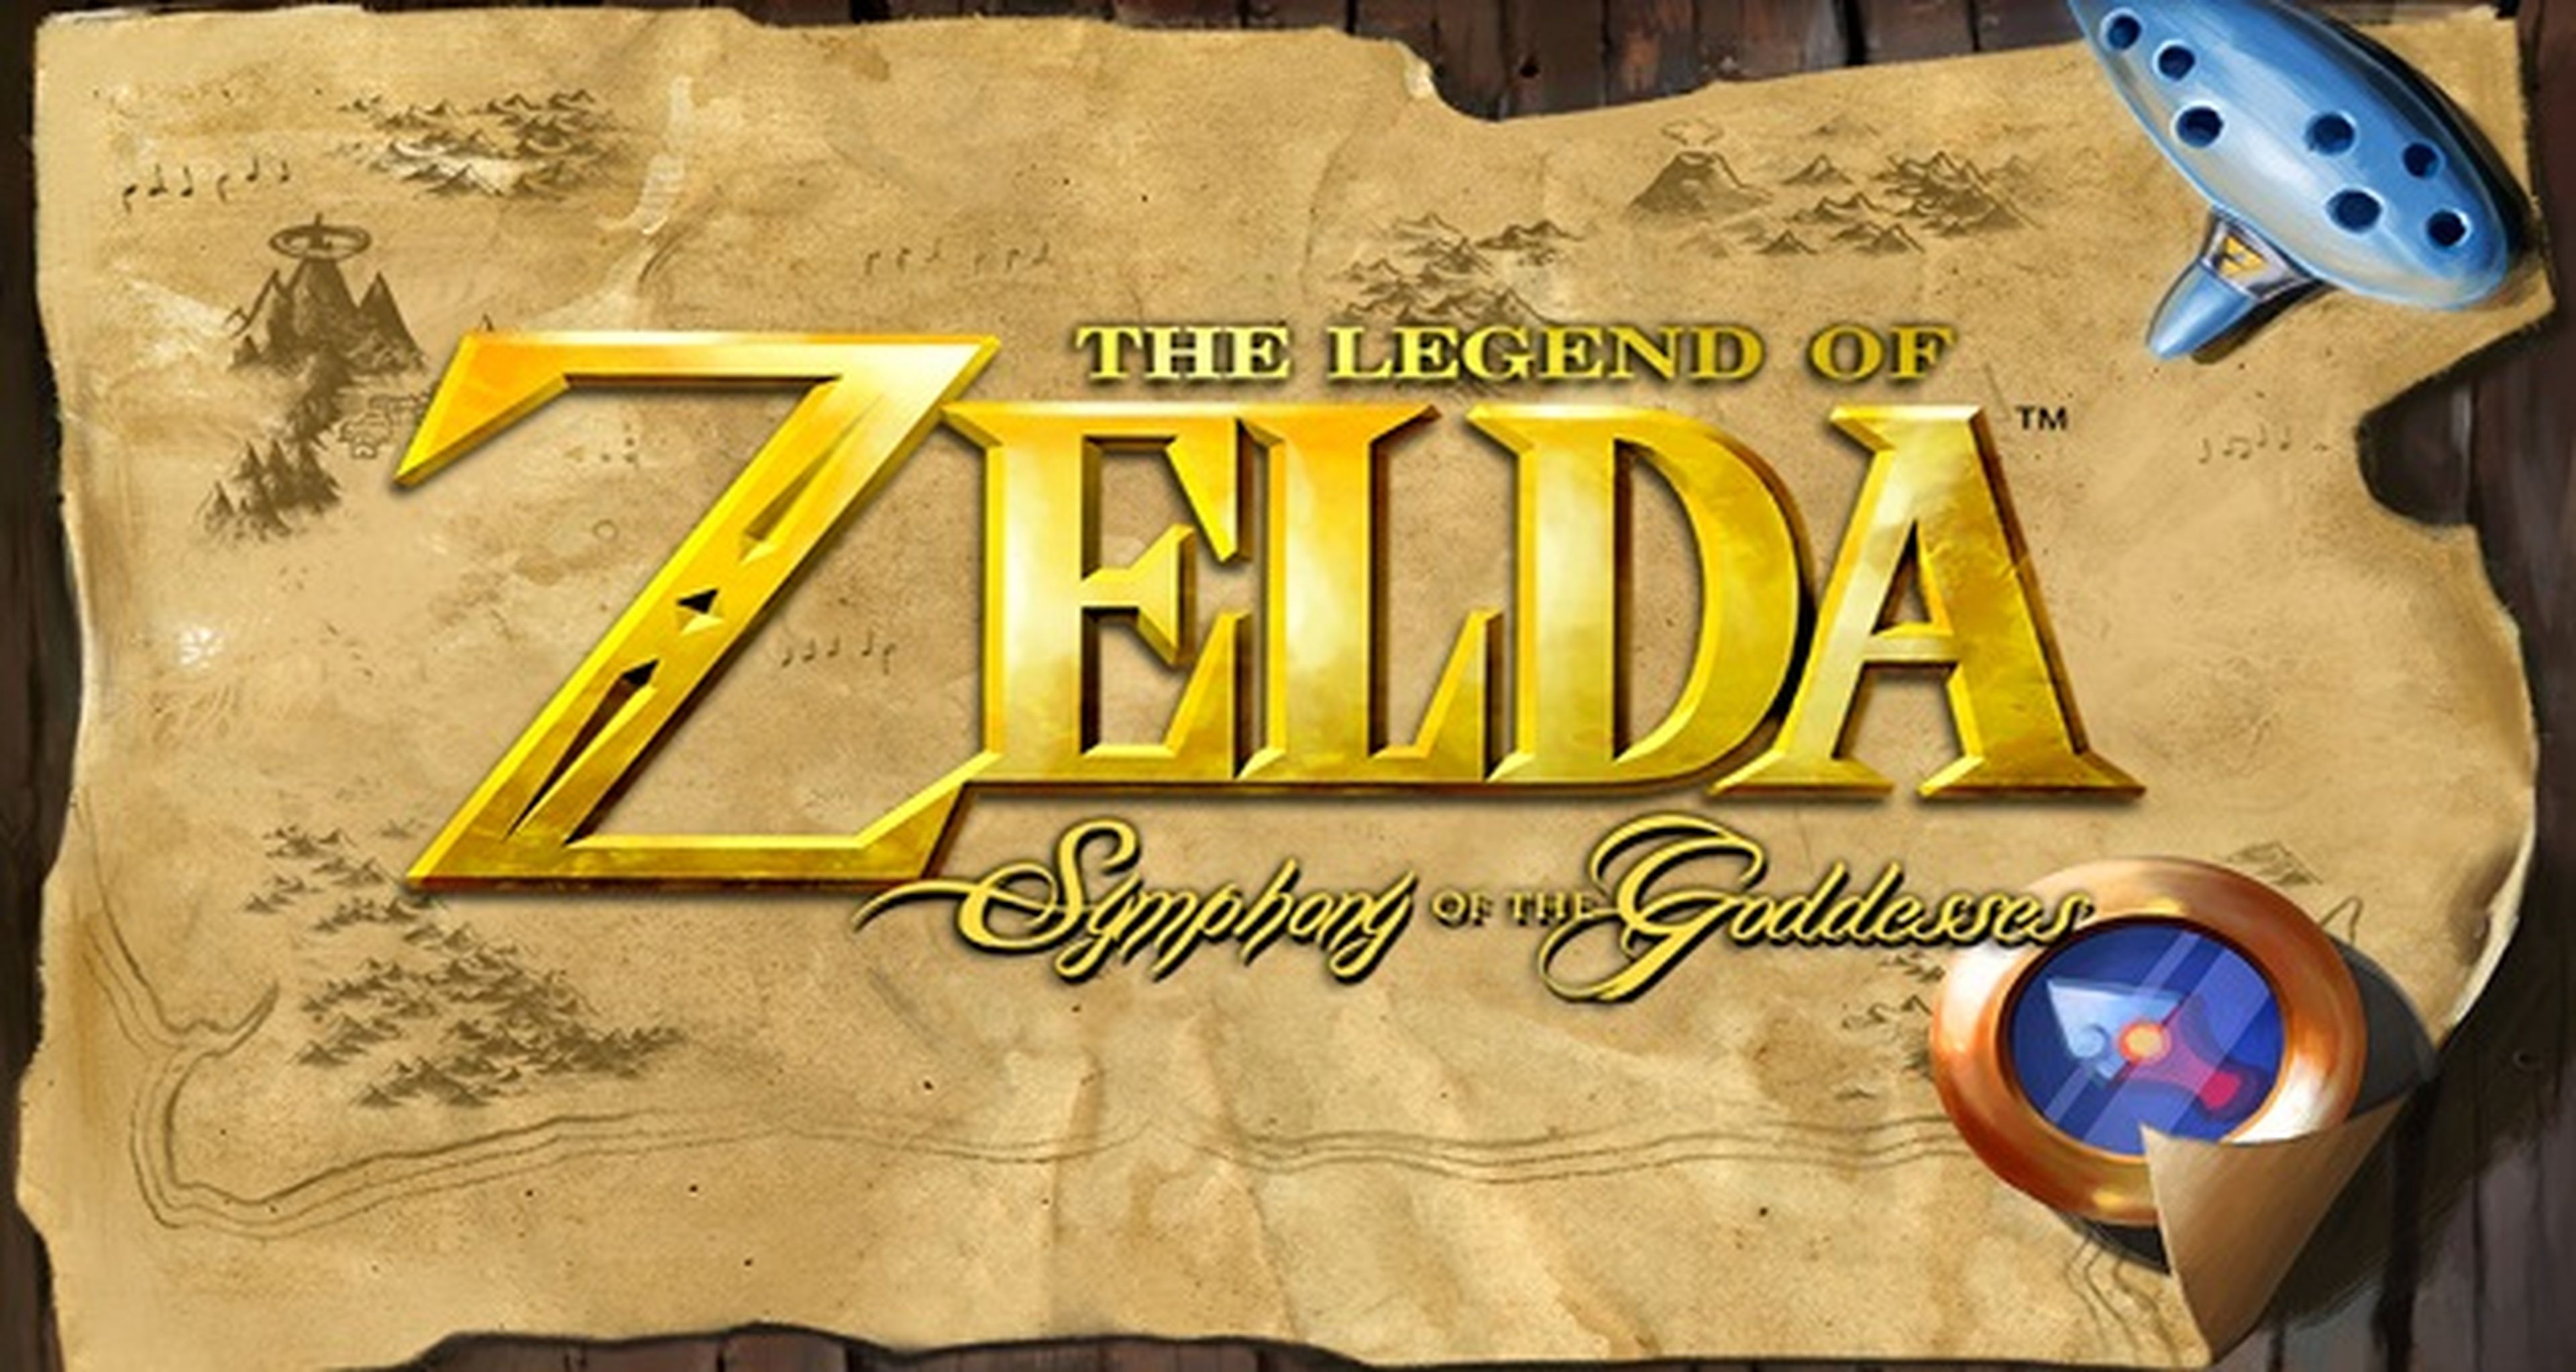 Entradas ya a la venta para la gira musical de The Legend of Zelda en España